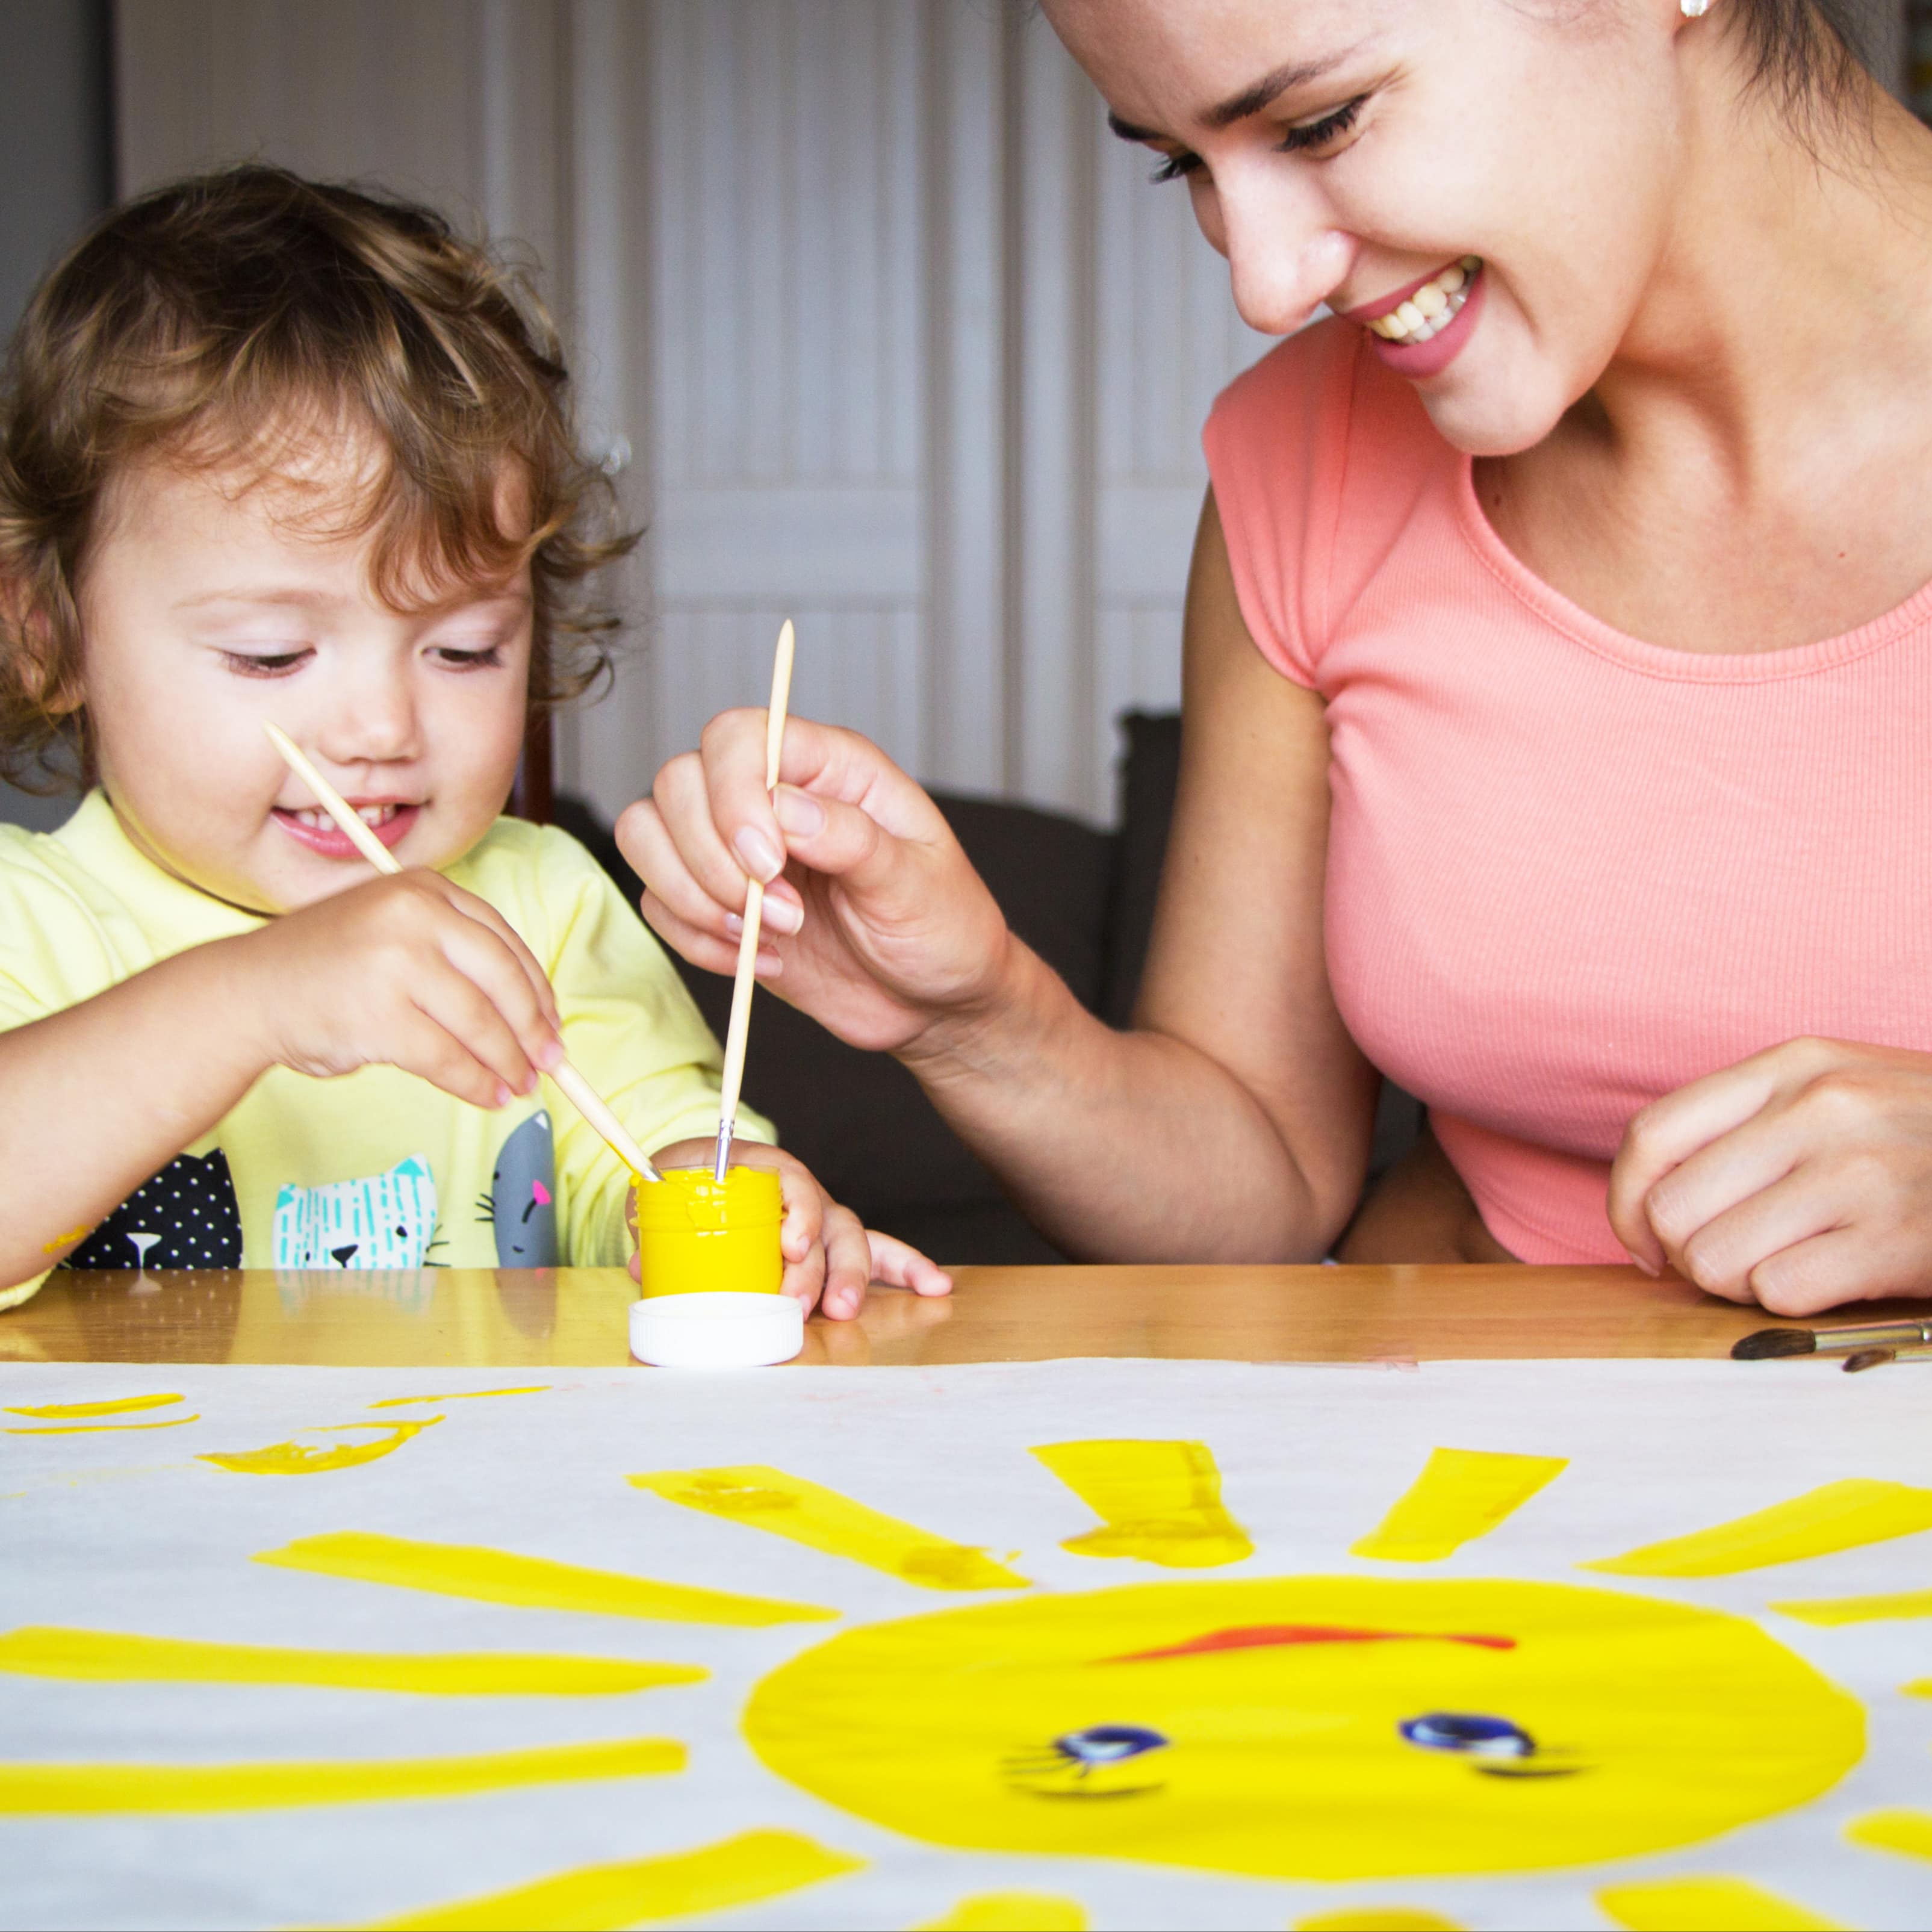 Babysitterin malt mit einem Kleinkind eine gelbe Sonne auf einem großen Blatt.